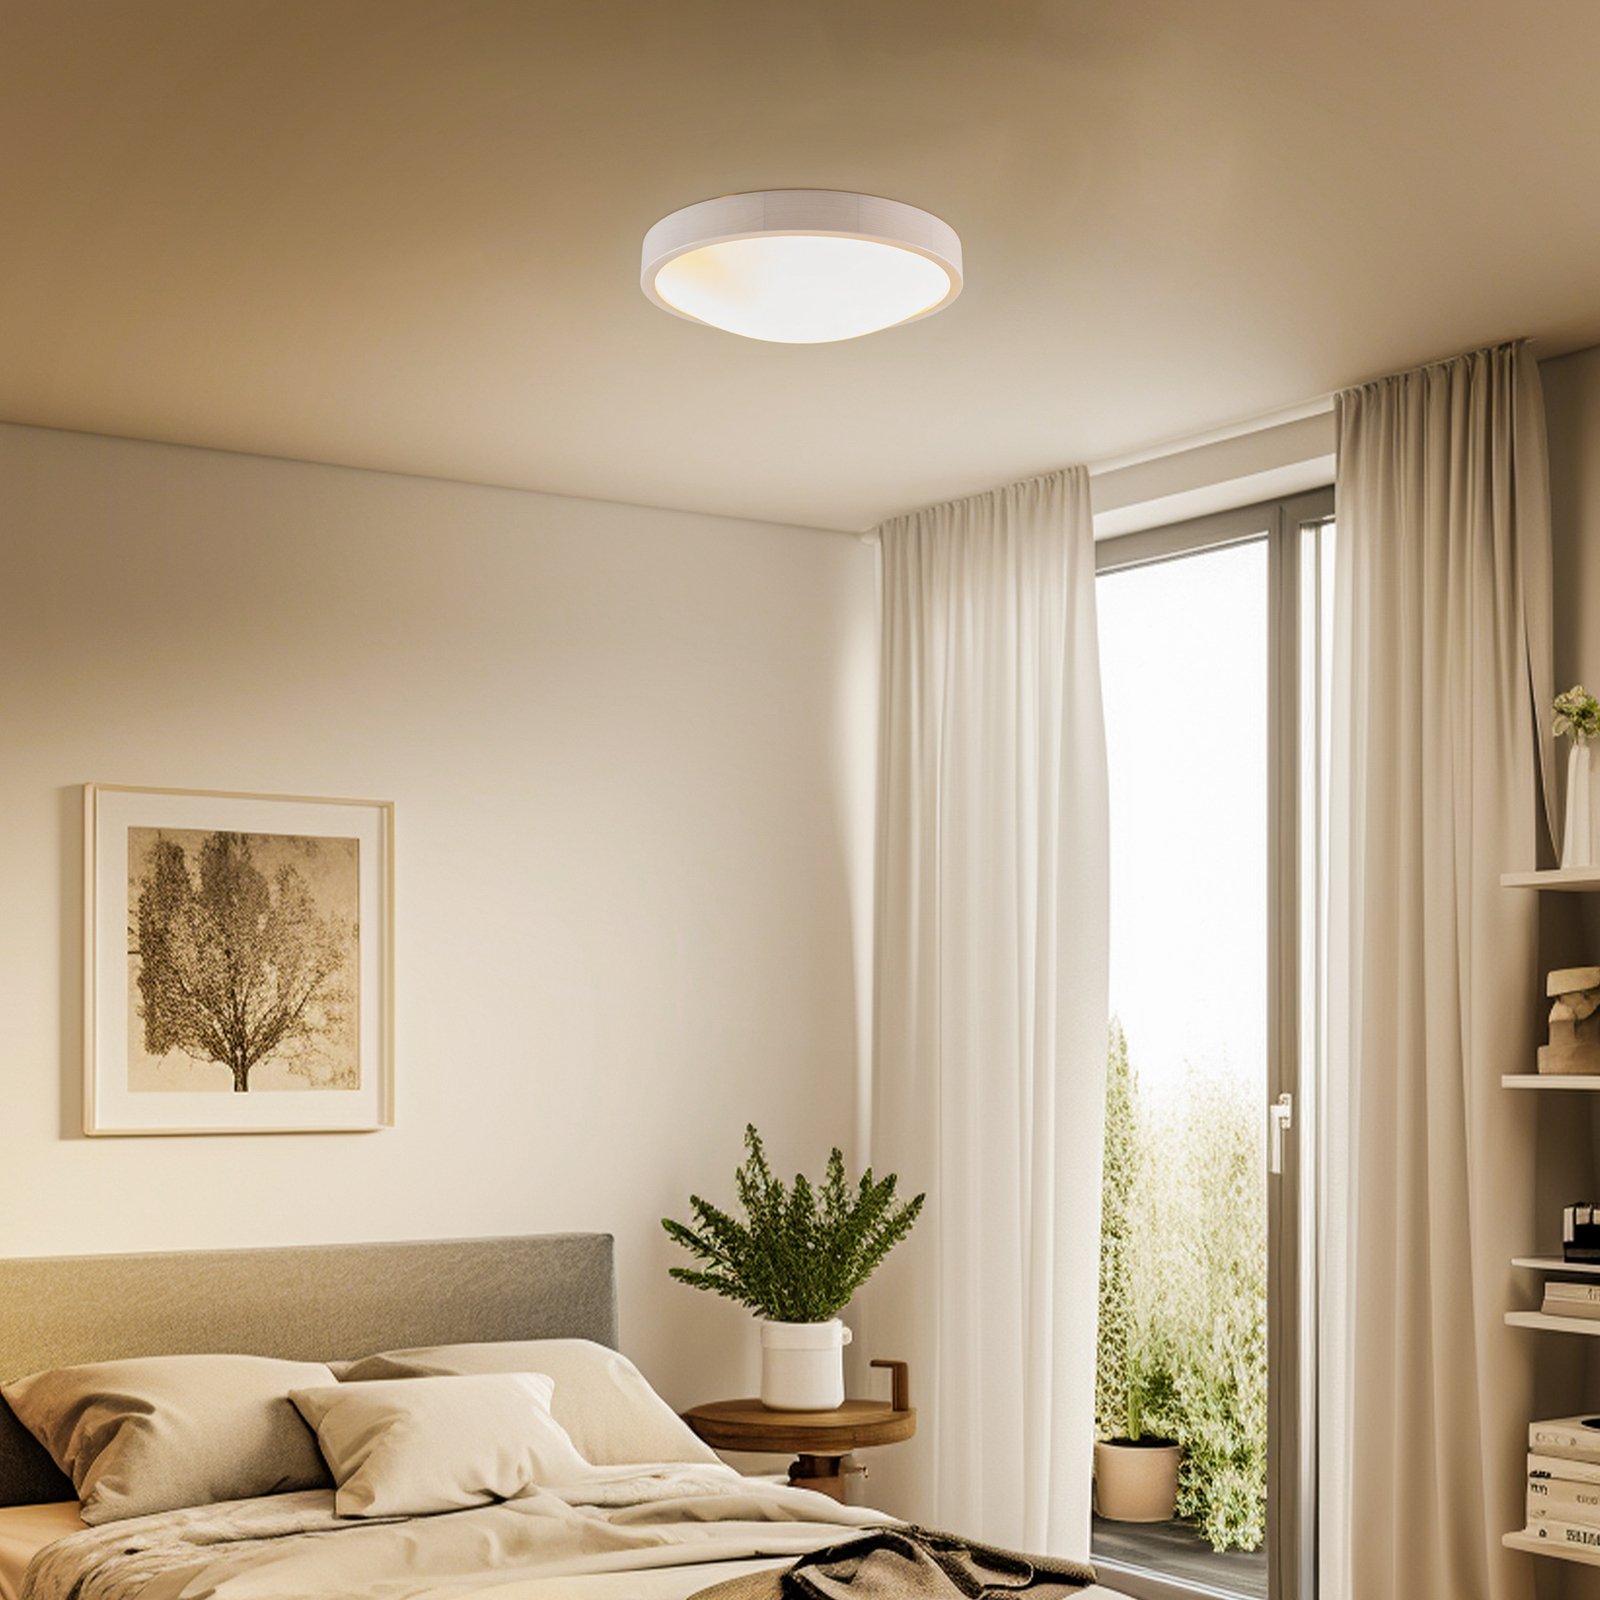 Envostar Kris ceiling light, Ø 37.5 cm, white